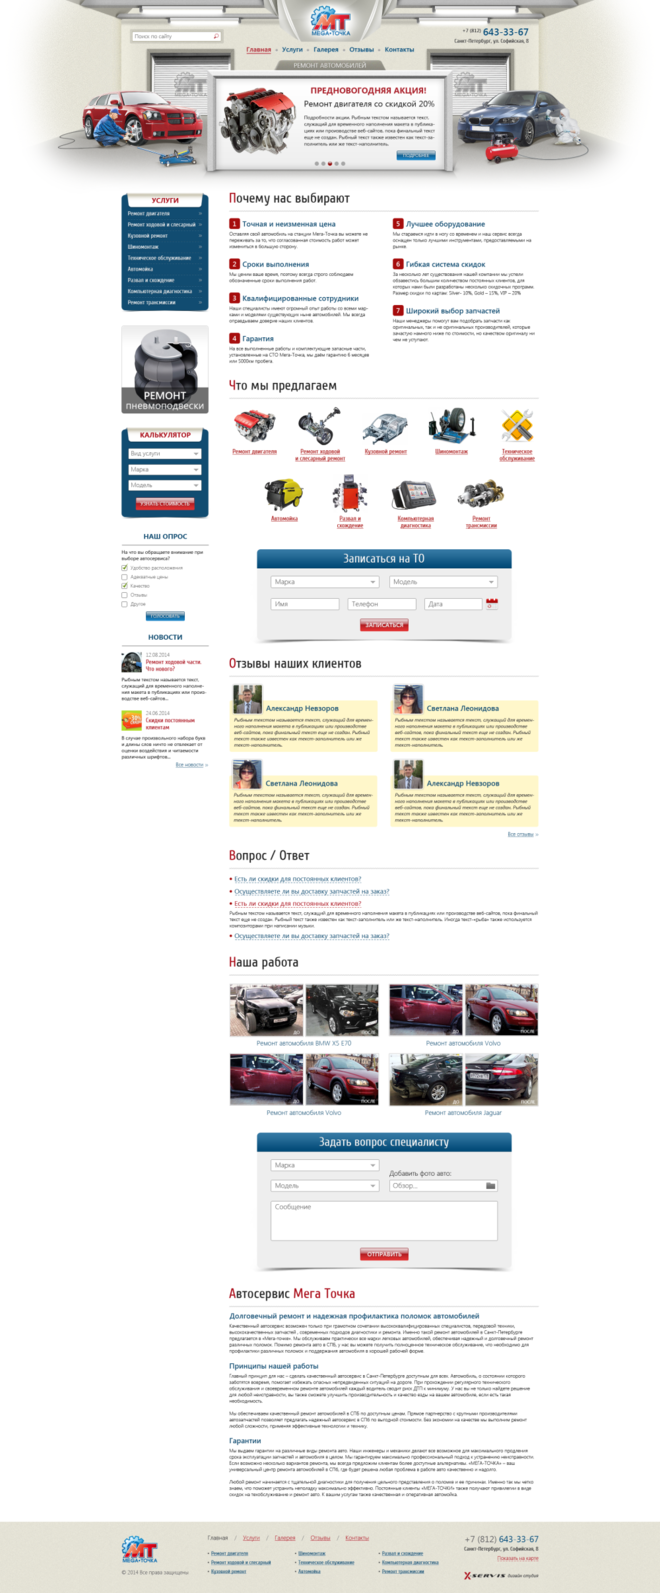 Создание сайта по ремонту автомобилей в автосервисе «Мега Точка»